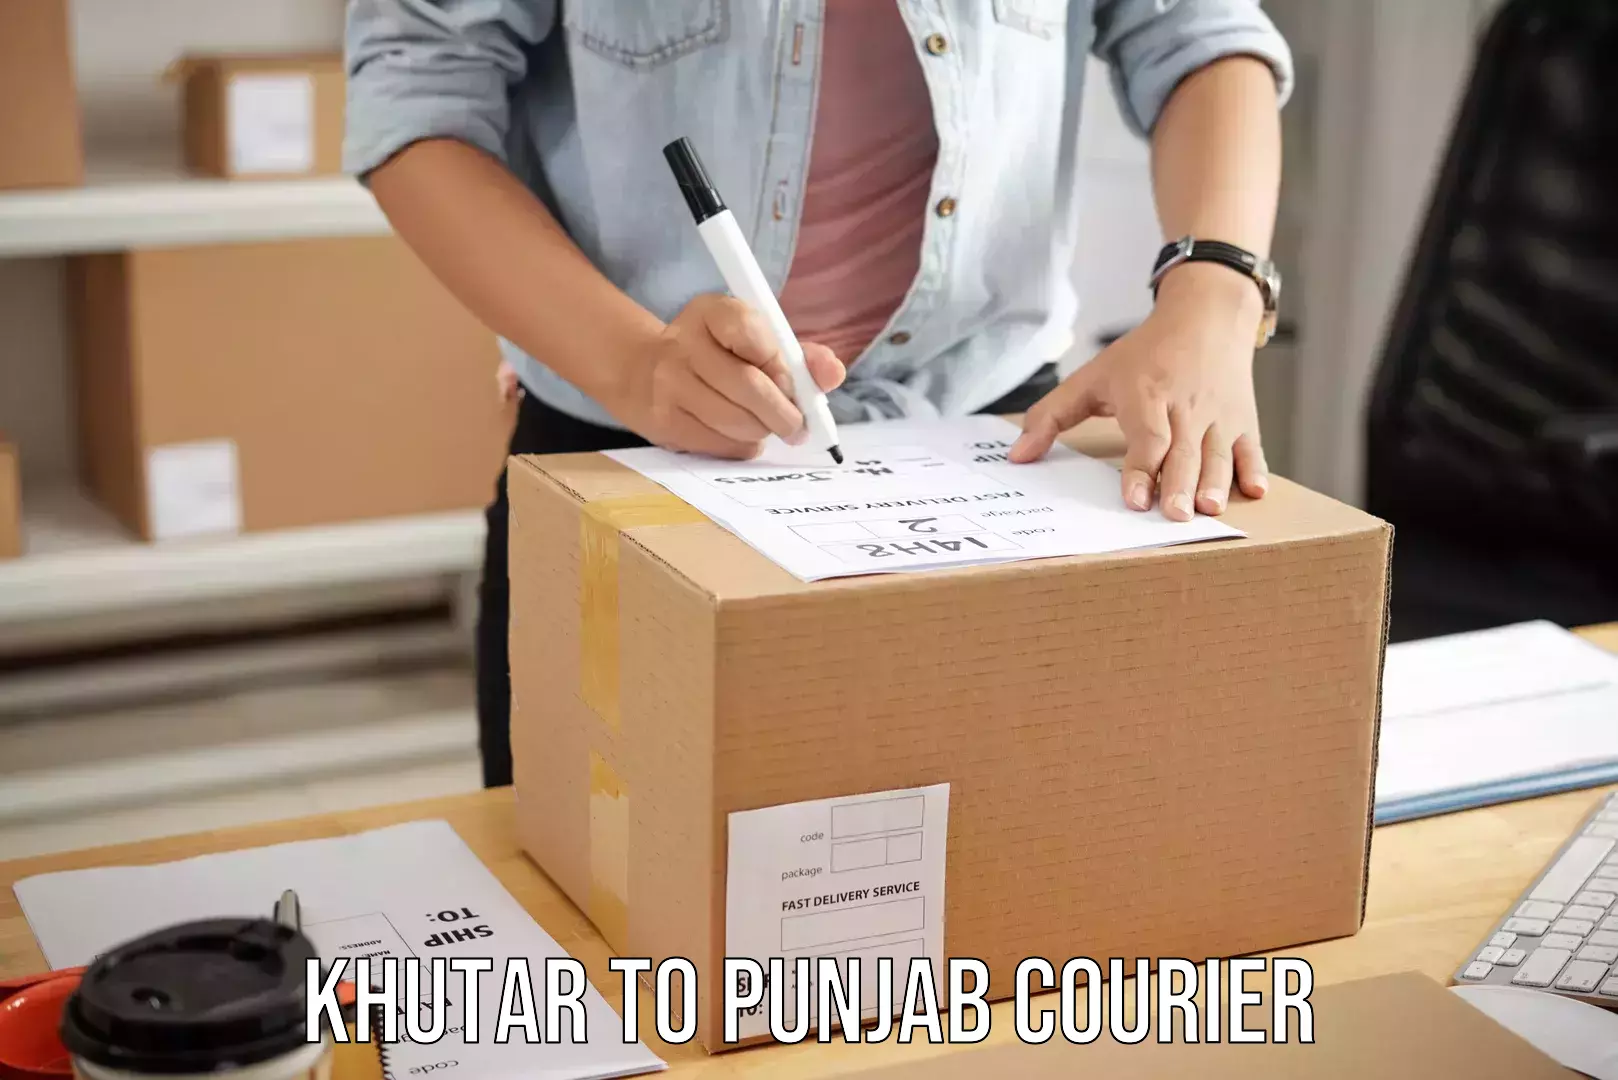 Simplified luggage transport Khutar to Punjab